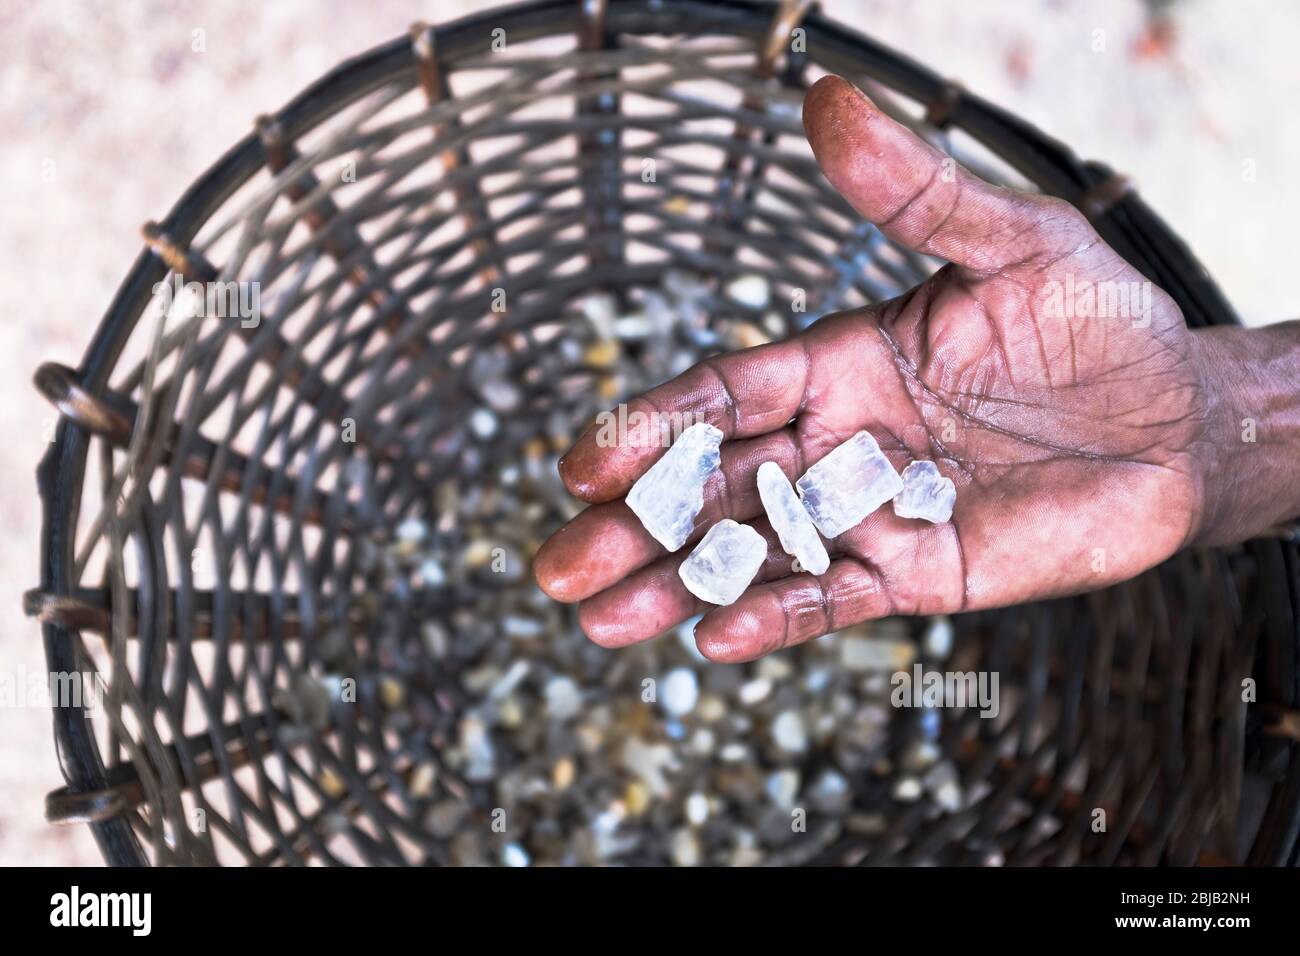 dh Sri Lankan Moonstone Mines AMBALANGODA SRI LANKA main avec des pierres de lune brutes non coupées de l'extraction de pierres précieuses de pierre de pierre précieuse de bac Banque D'Images